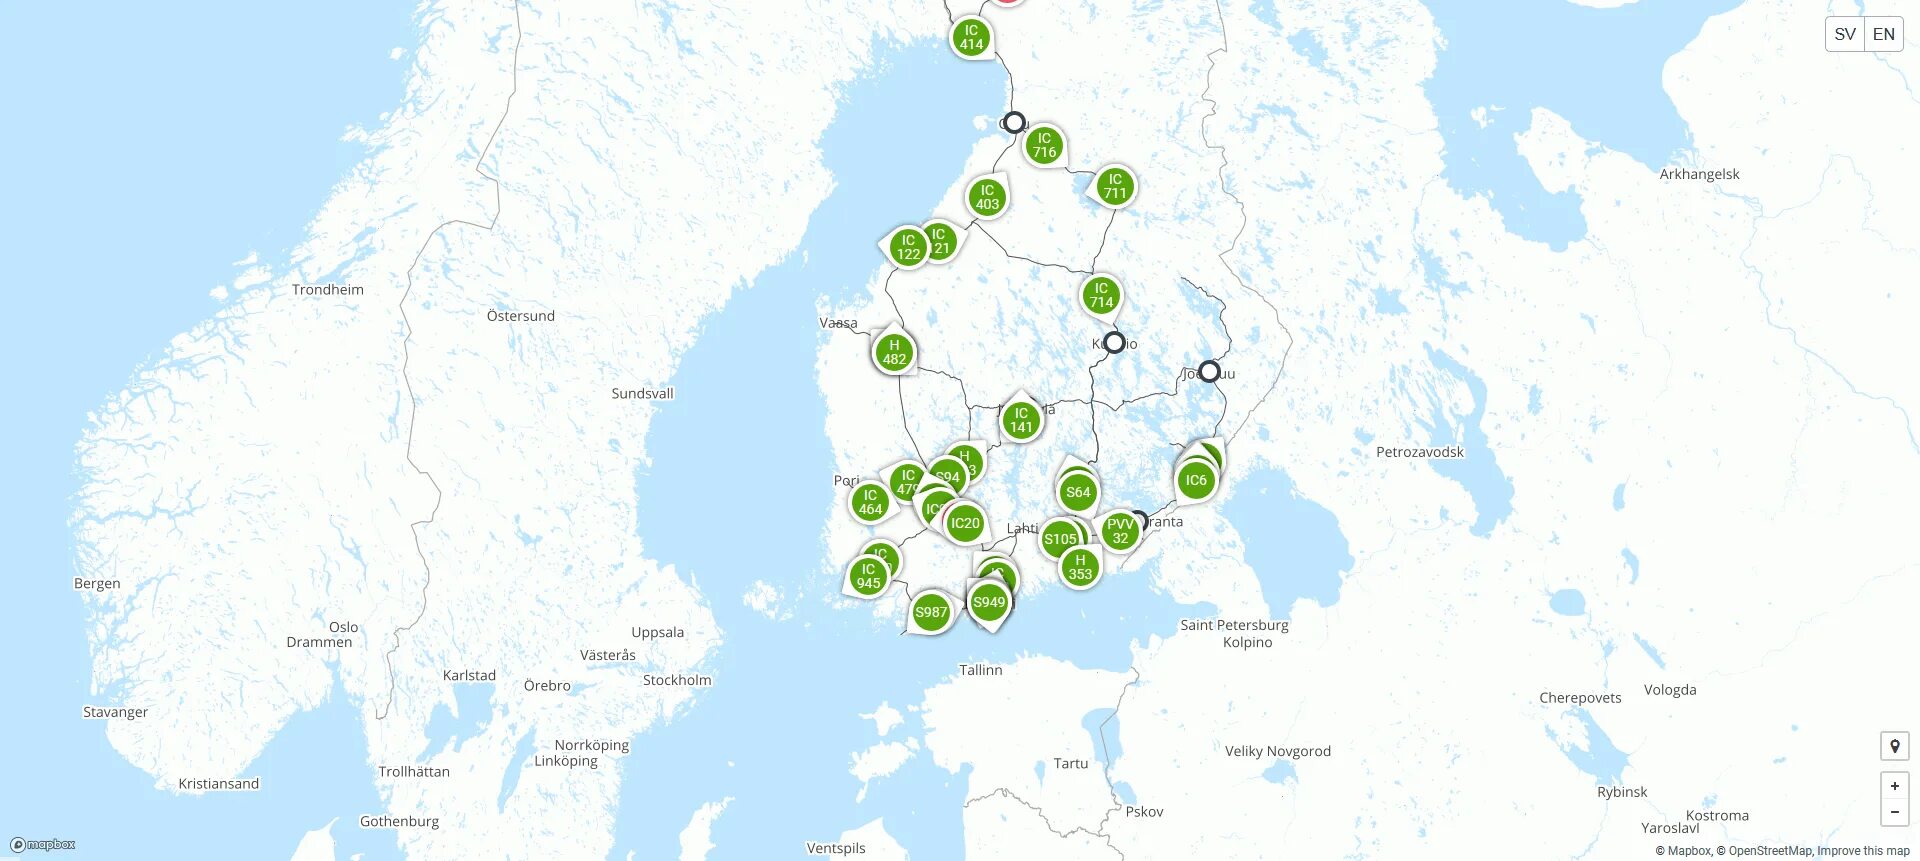 Железнодорожная сеть Финляндии карта. Карта ж/д Финляндии. Карта ЖД Финляндии. Карта железных дорог Финляндии. Отслеживание поездов на карте